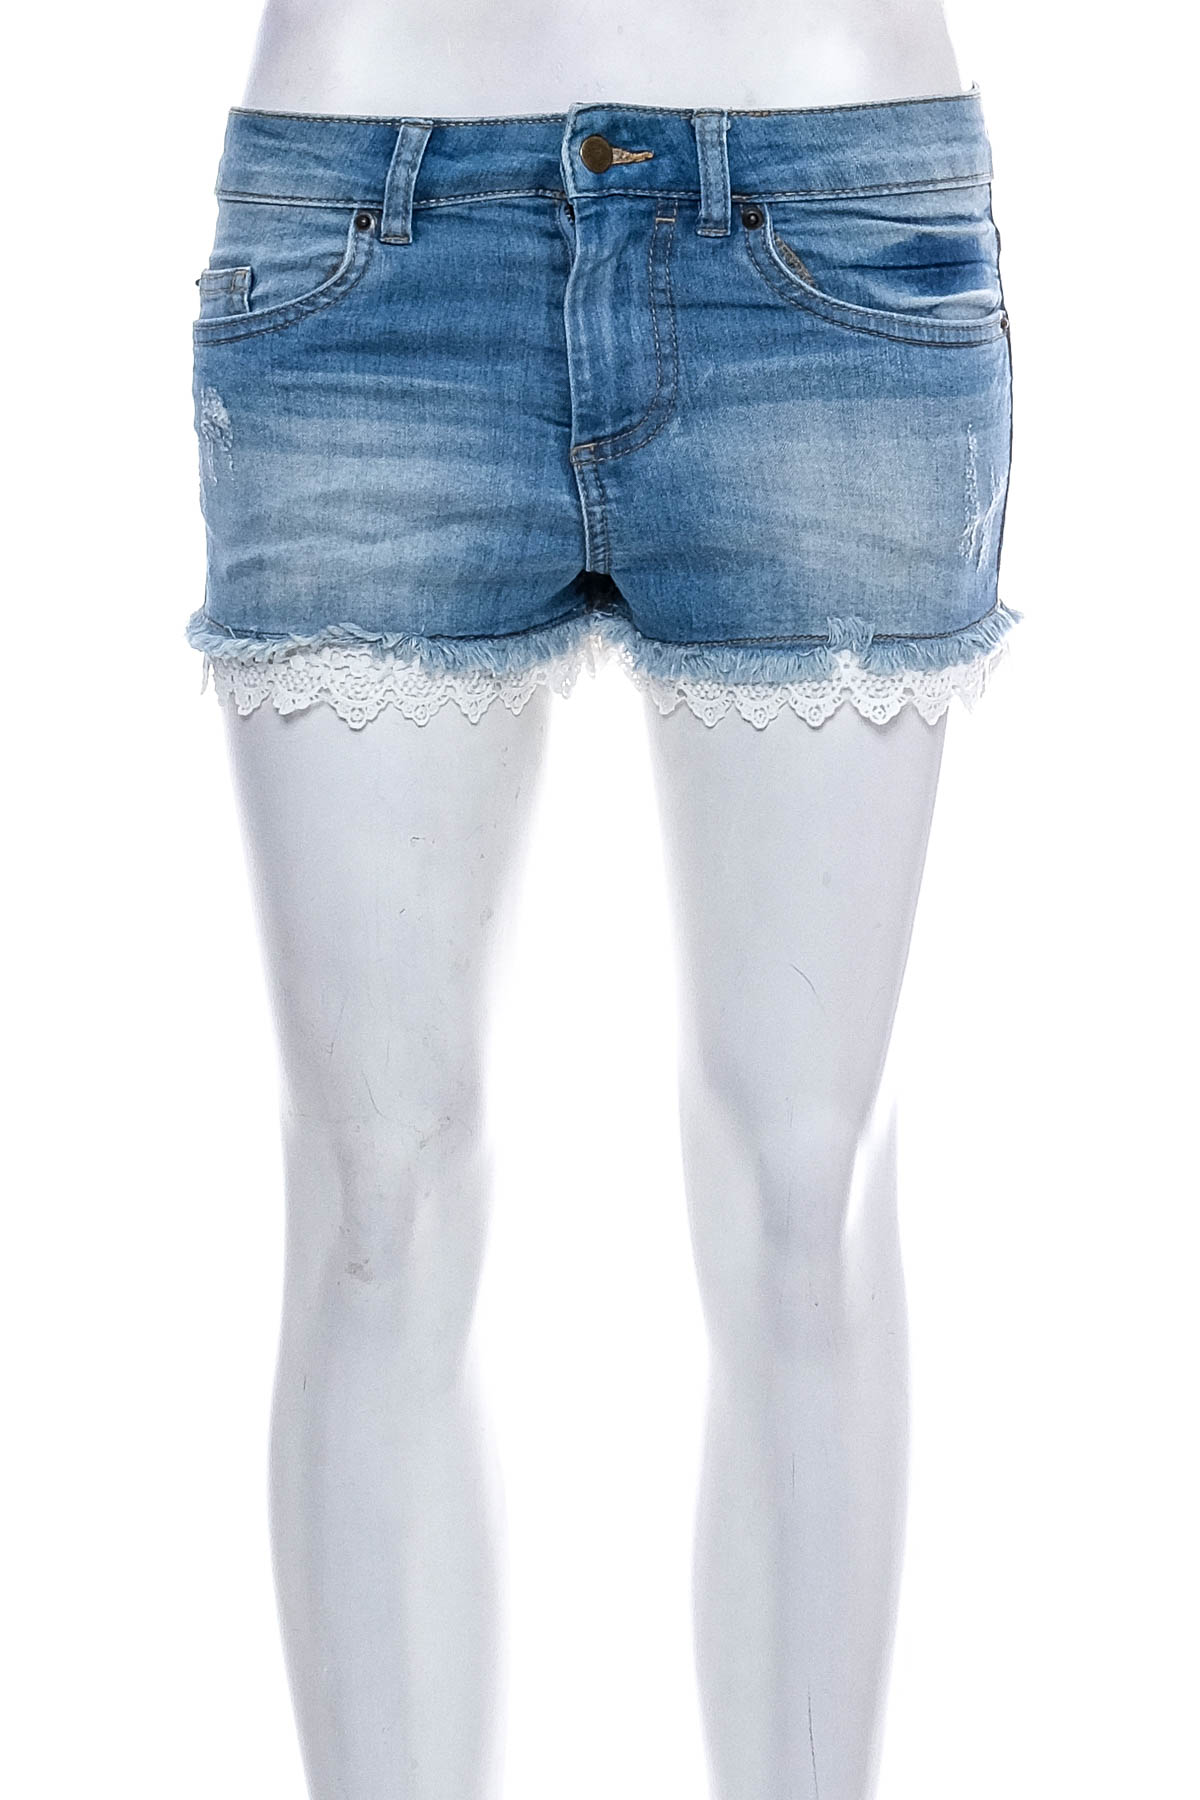 Female shorts - Hunkemoller - 0